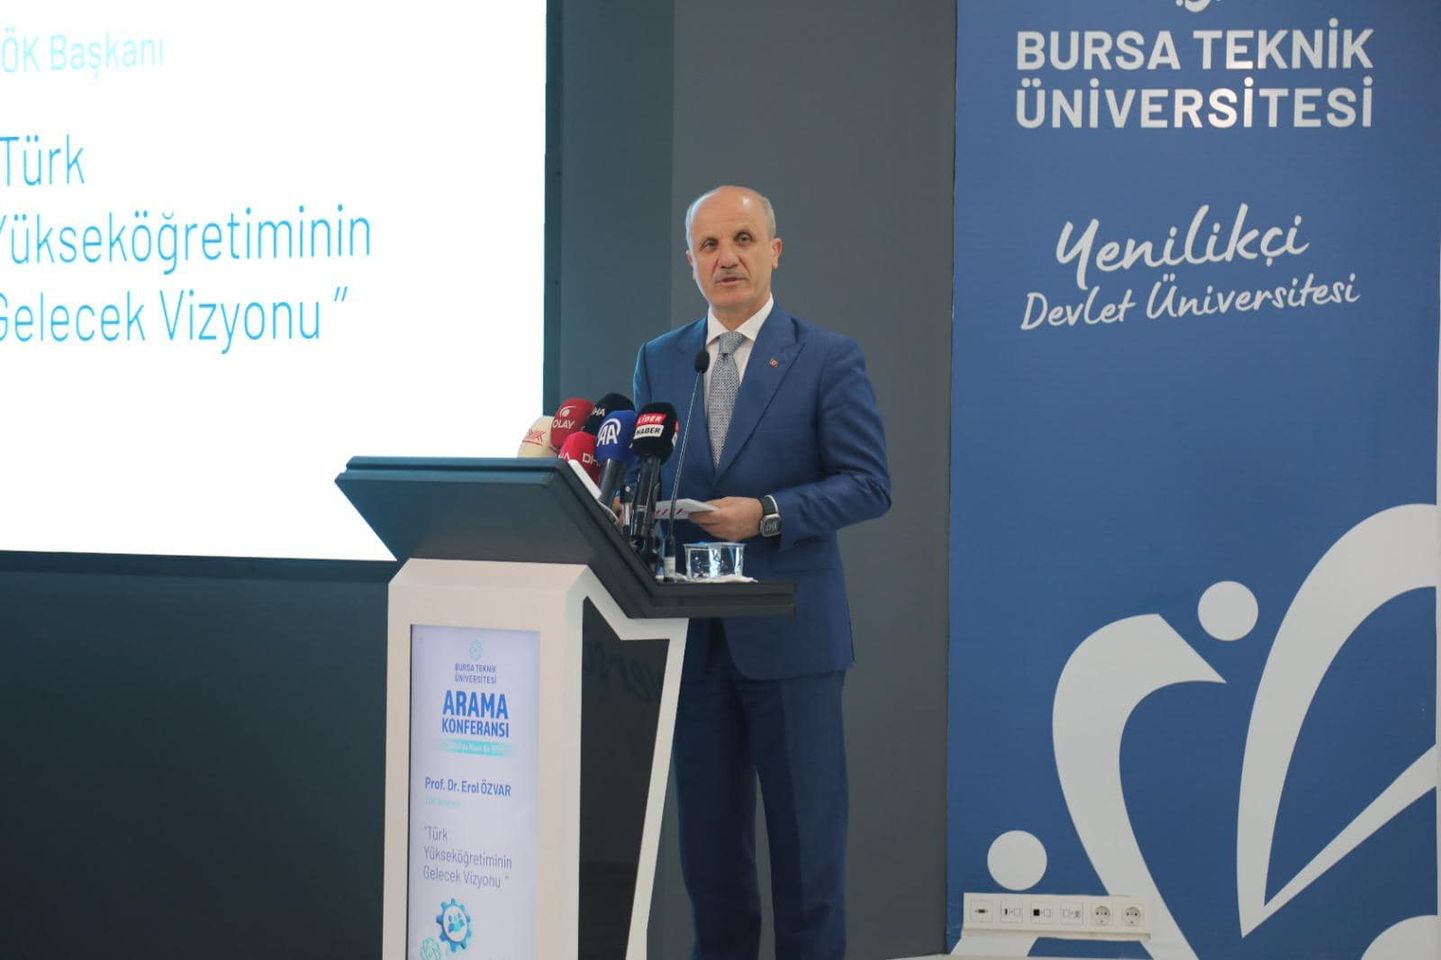 Türkiye'nin yükseköğretimine yeni bir vizyon: Üniversite Arama Konferansı